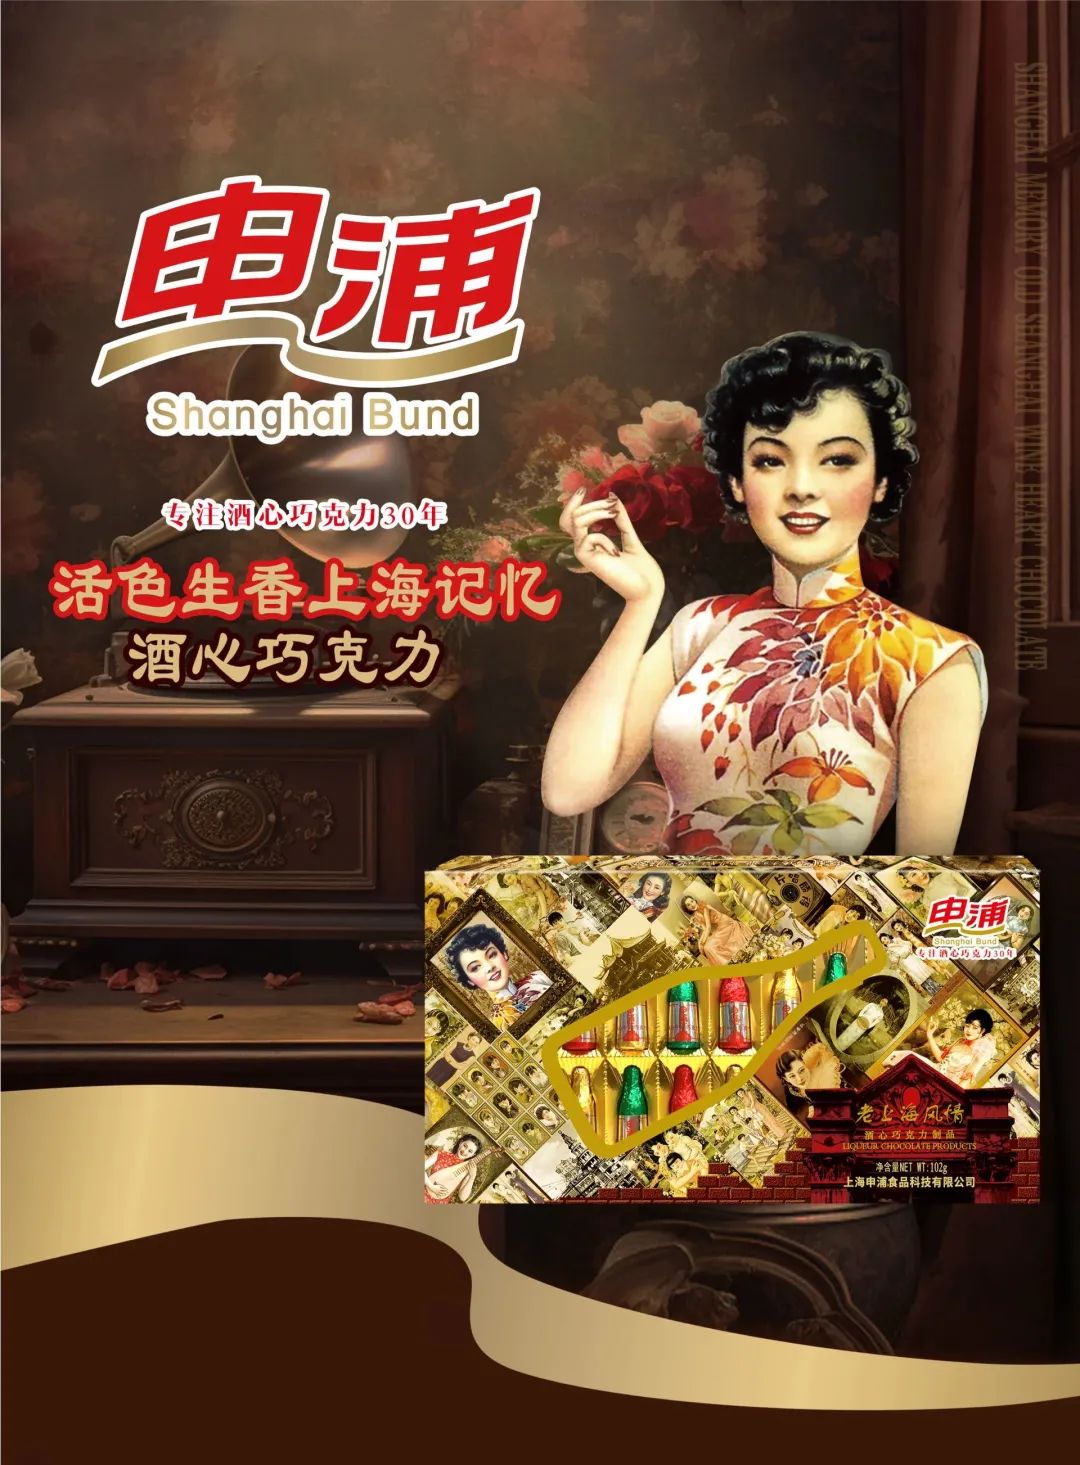 Shanghai Gold List Souvenirs in 2023 (Part II)